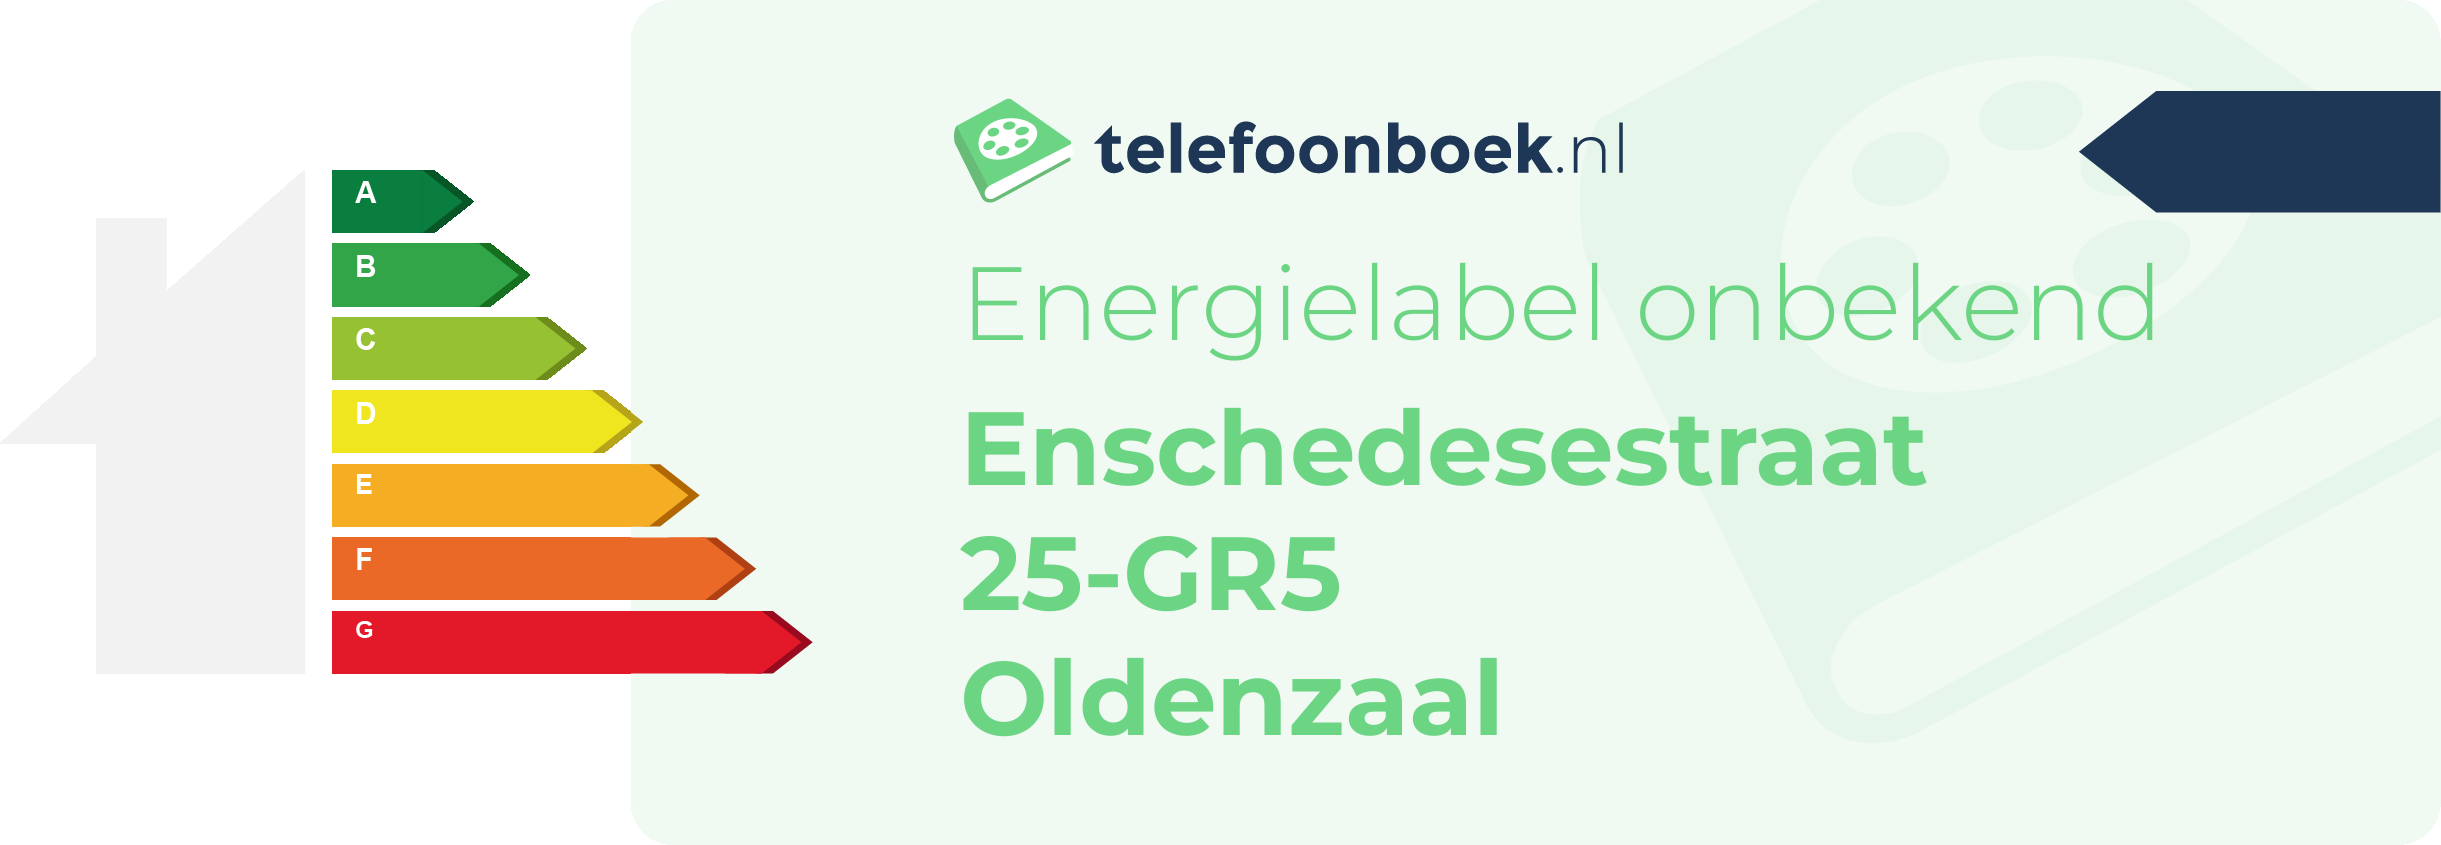 Energielabel Enschedesestraat 25-GR5 Oldenzaal